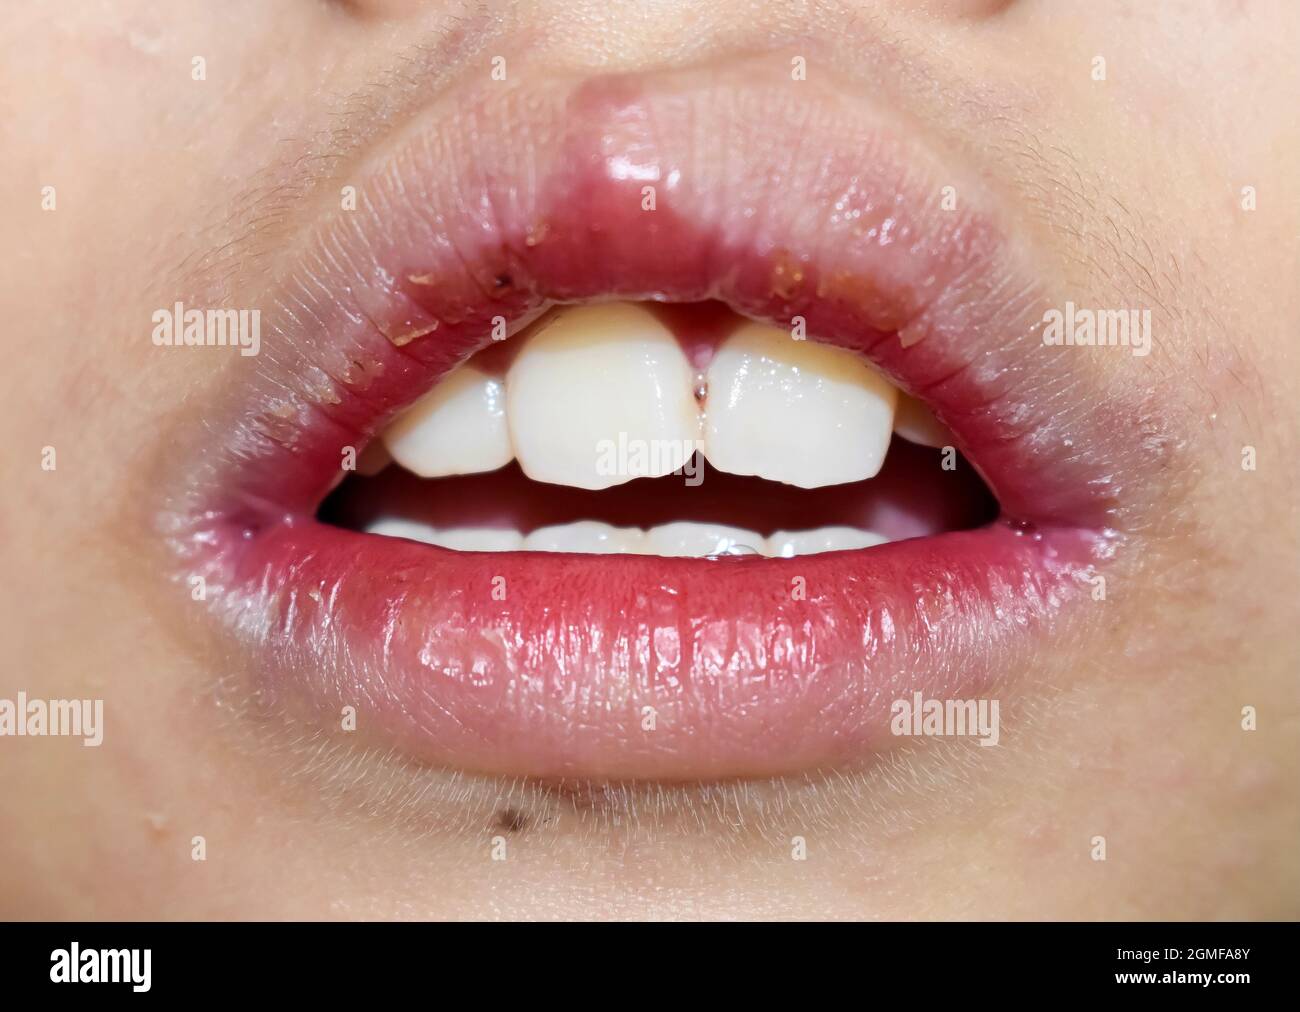 Eckige Stomatitis oder eckige Cheilitis oder Perleche beim asiatischen kleinen Jungen. Häufige entzündliche Erkrankung der Mundwinkel. Trockene Gesichtshaut und Lippen. Stockfoto